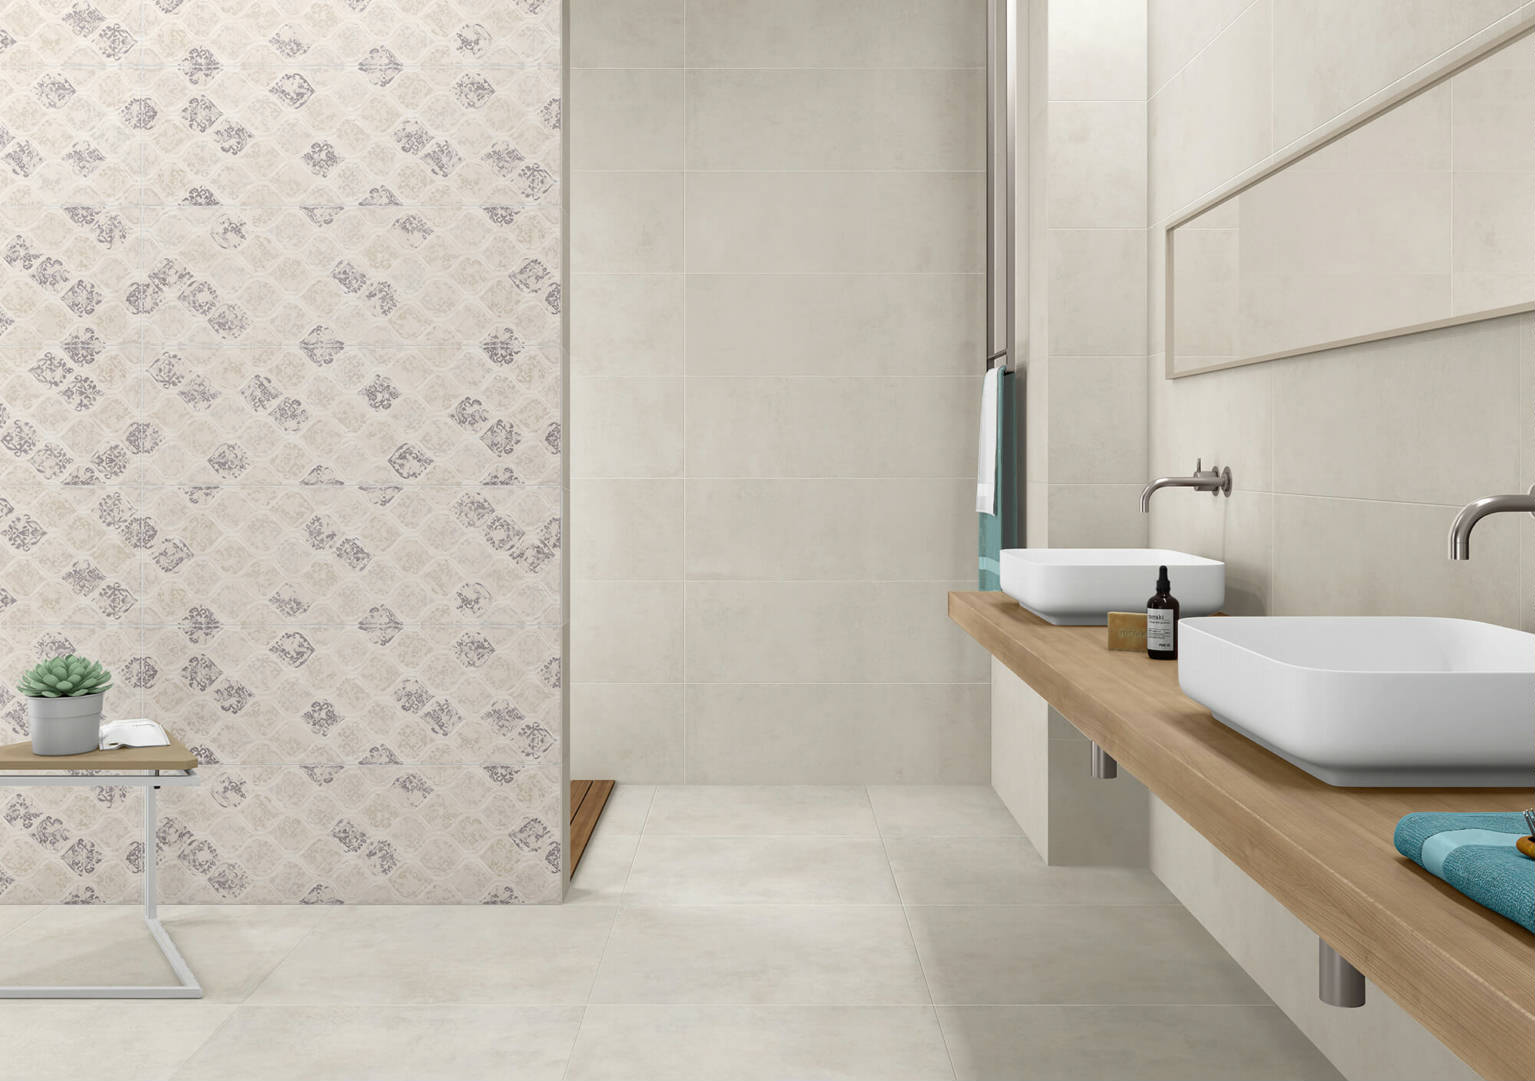 DRAVA MARFIL | General Ceramic Tiles